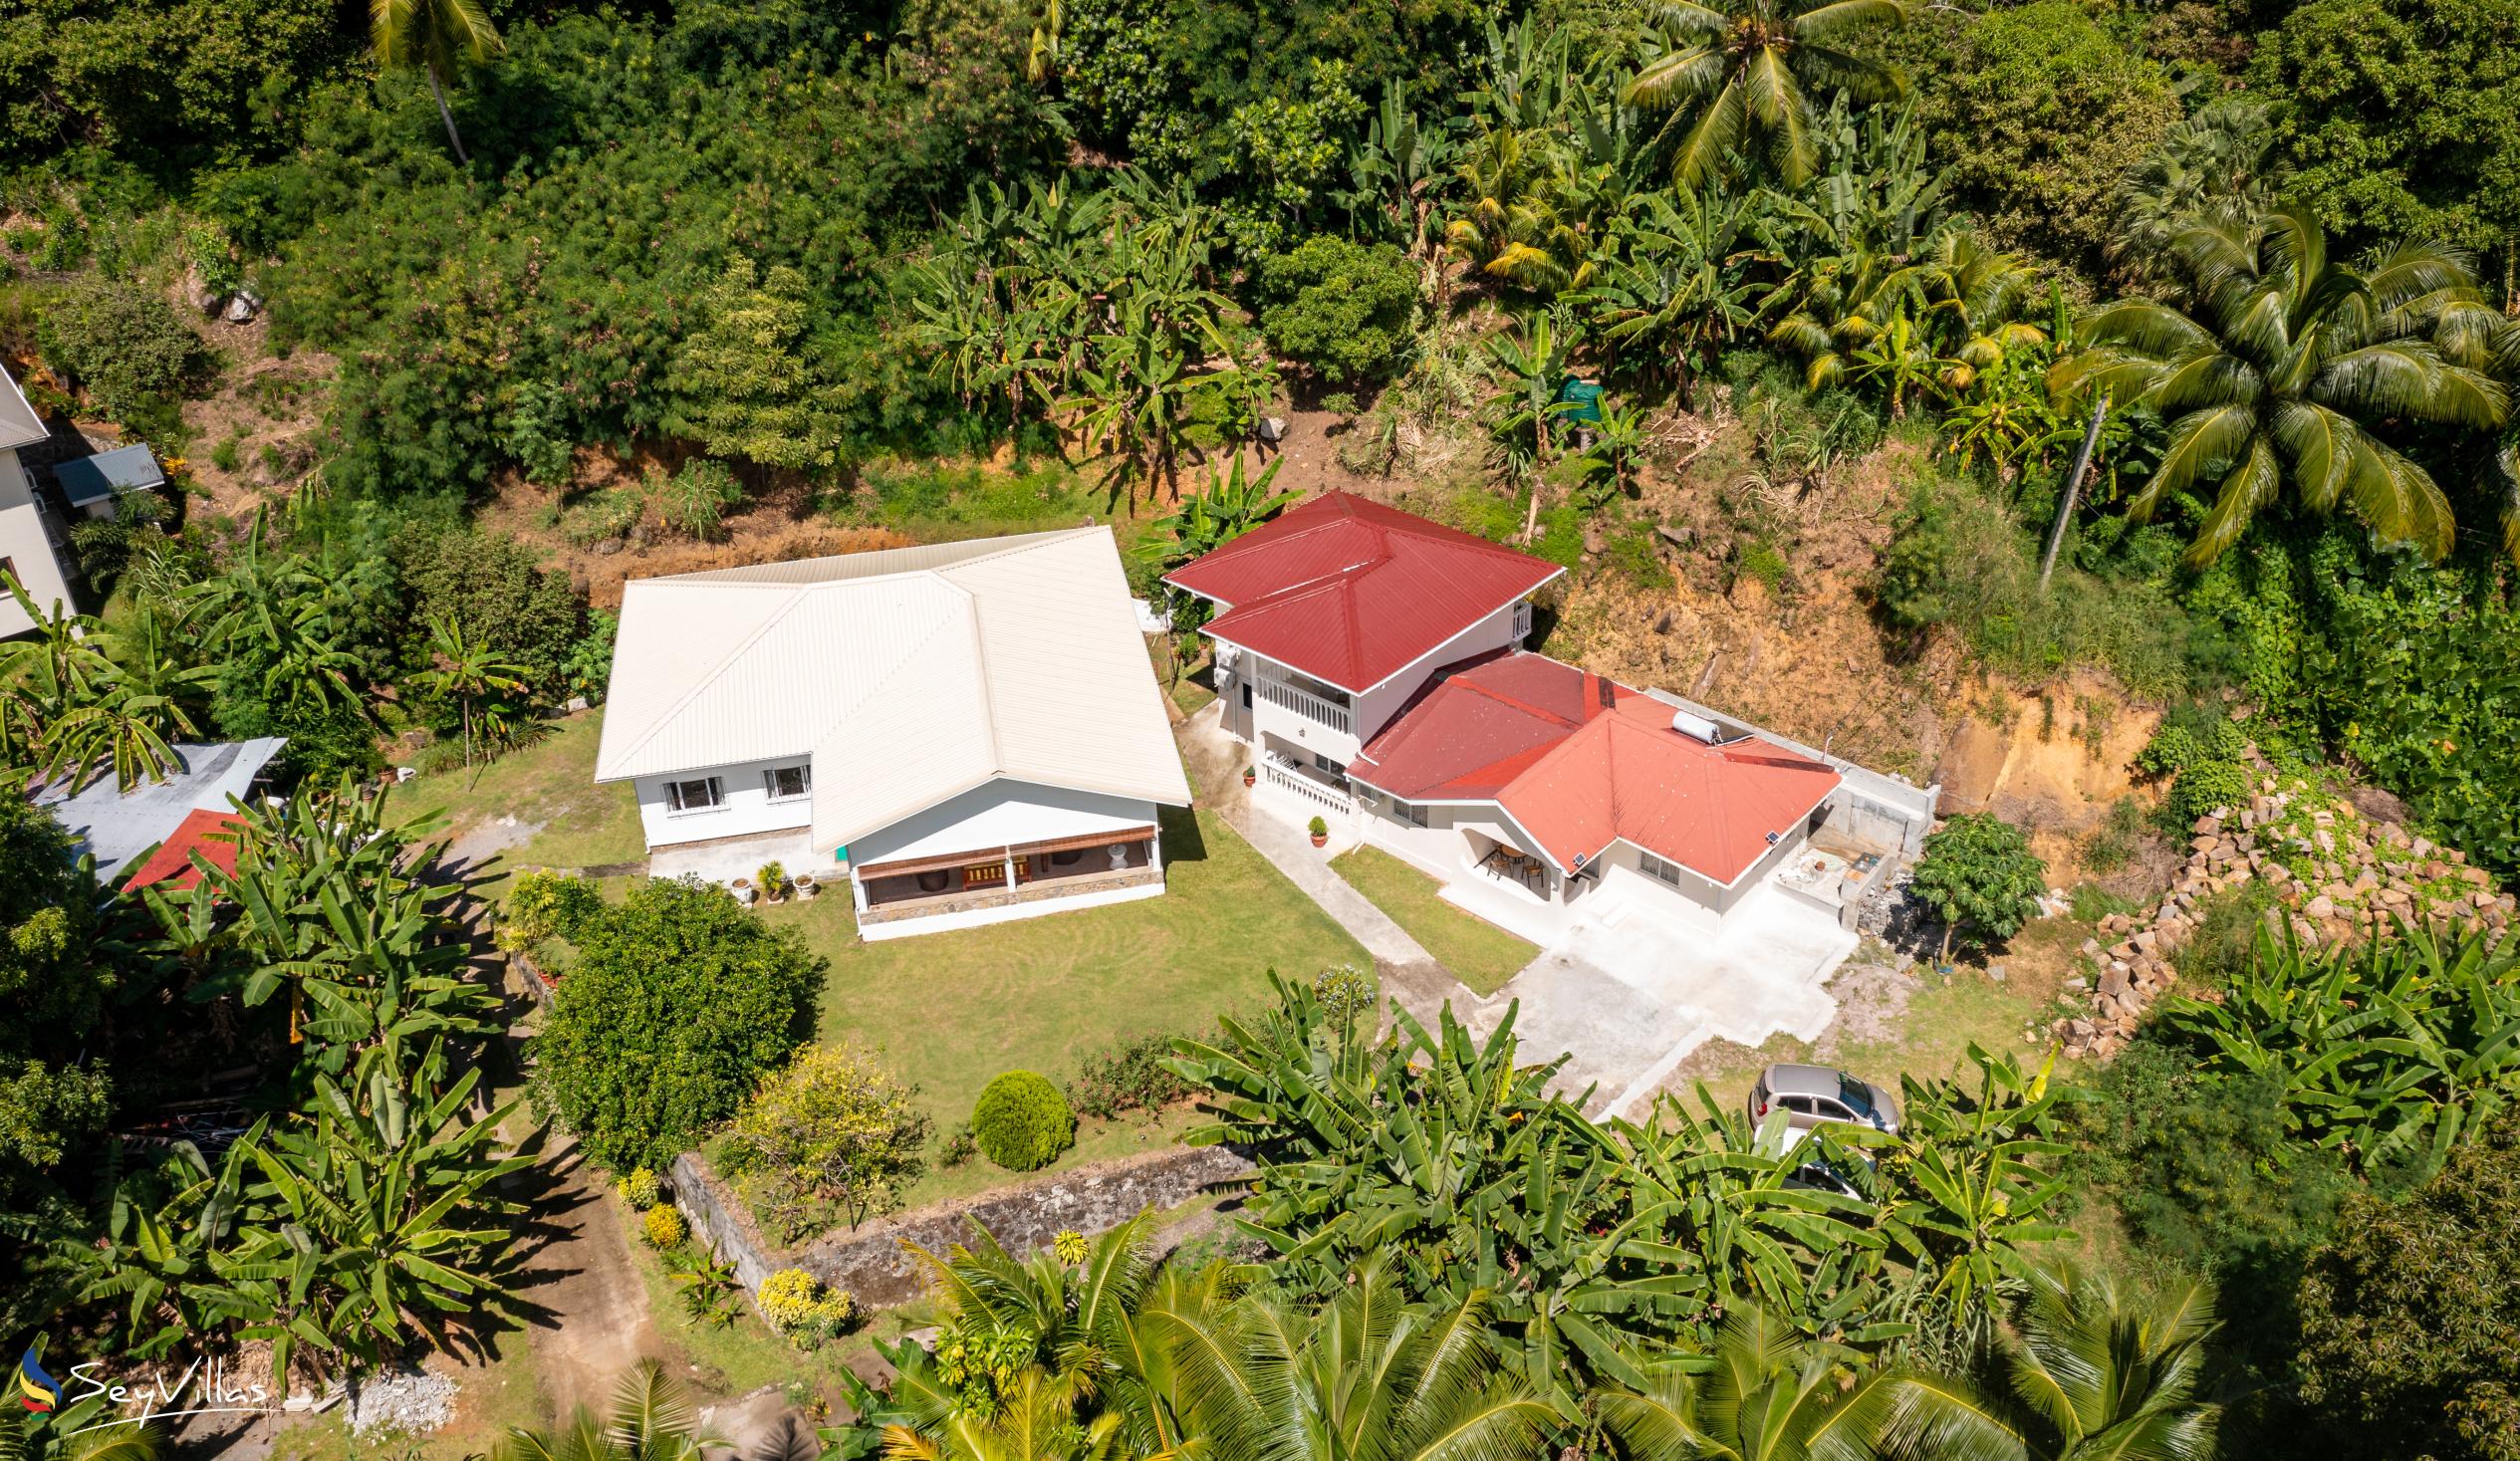 Photo 5: Paul's Residence - Outdoor area - Mahé (Seychelles)